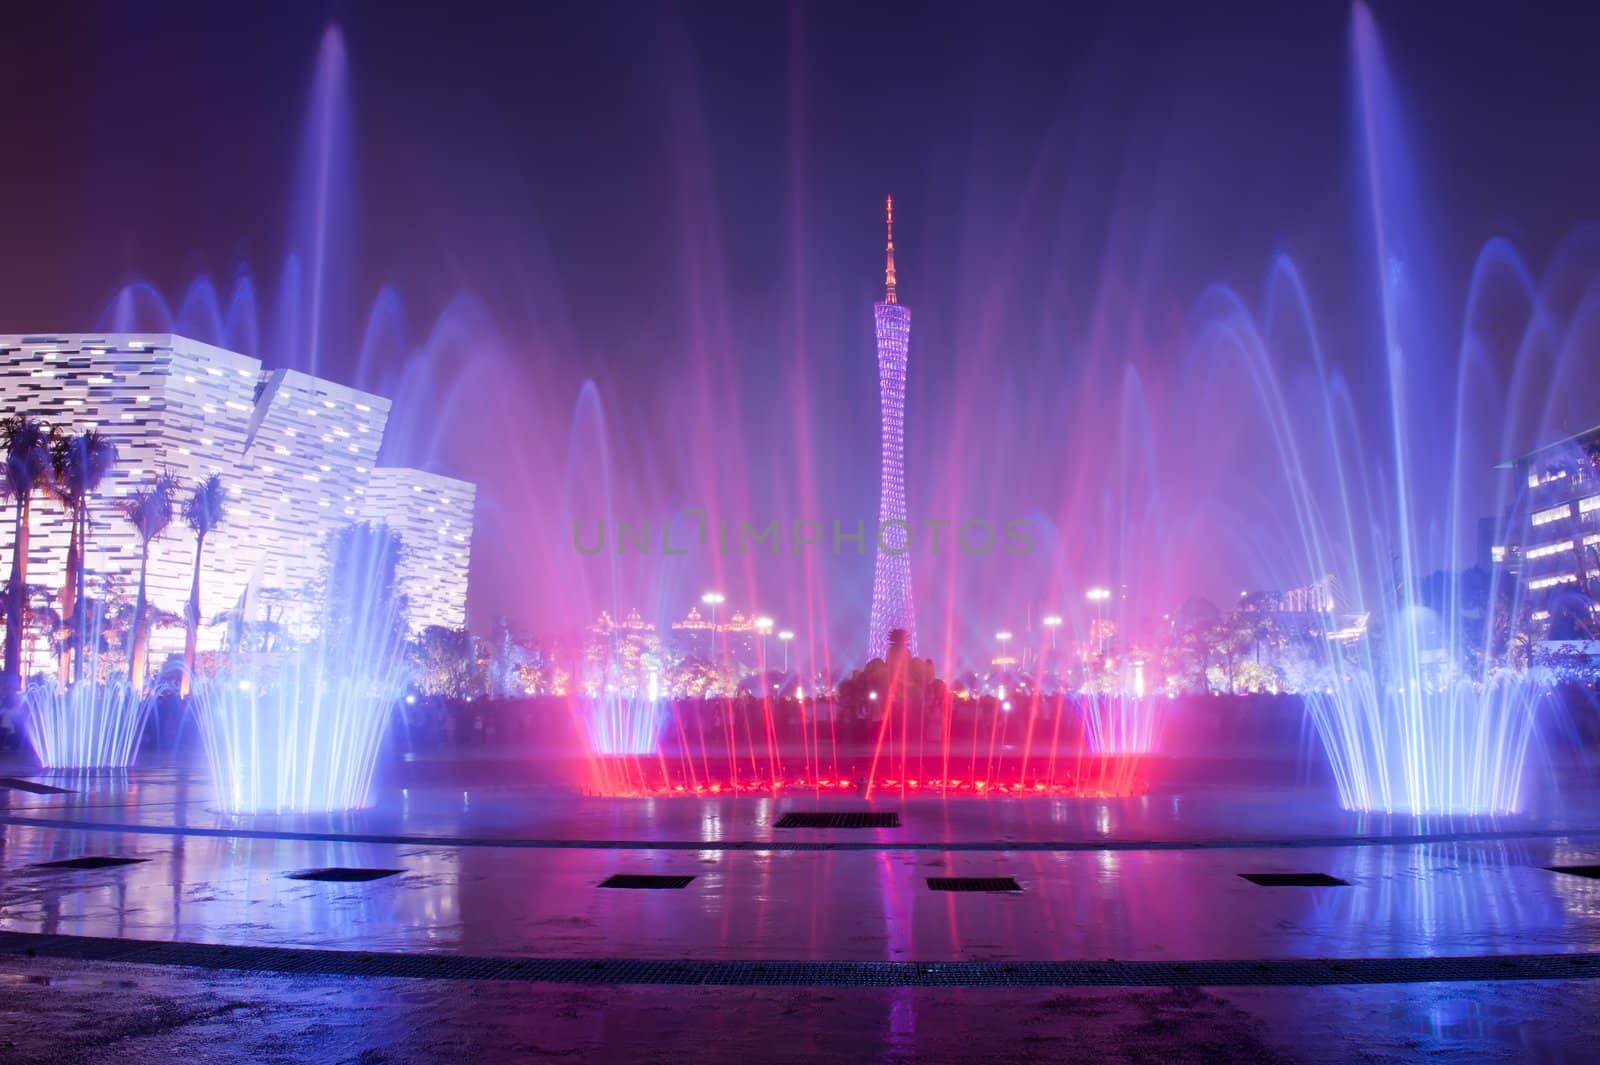 Fountain in Guangzhou Flower City Plaza, located in Zhujiang New Town,, Guangzhou city, Guangdong province of China